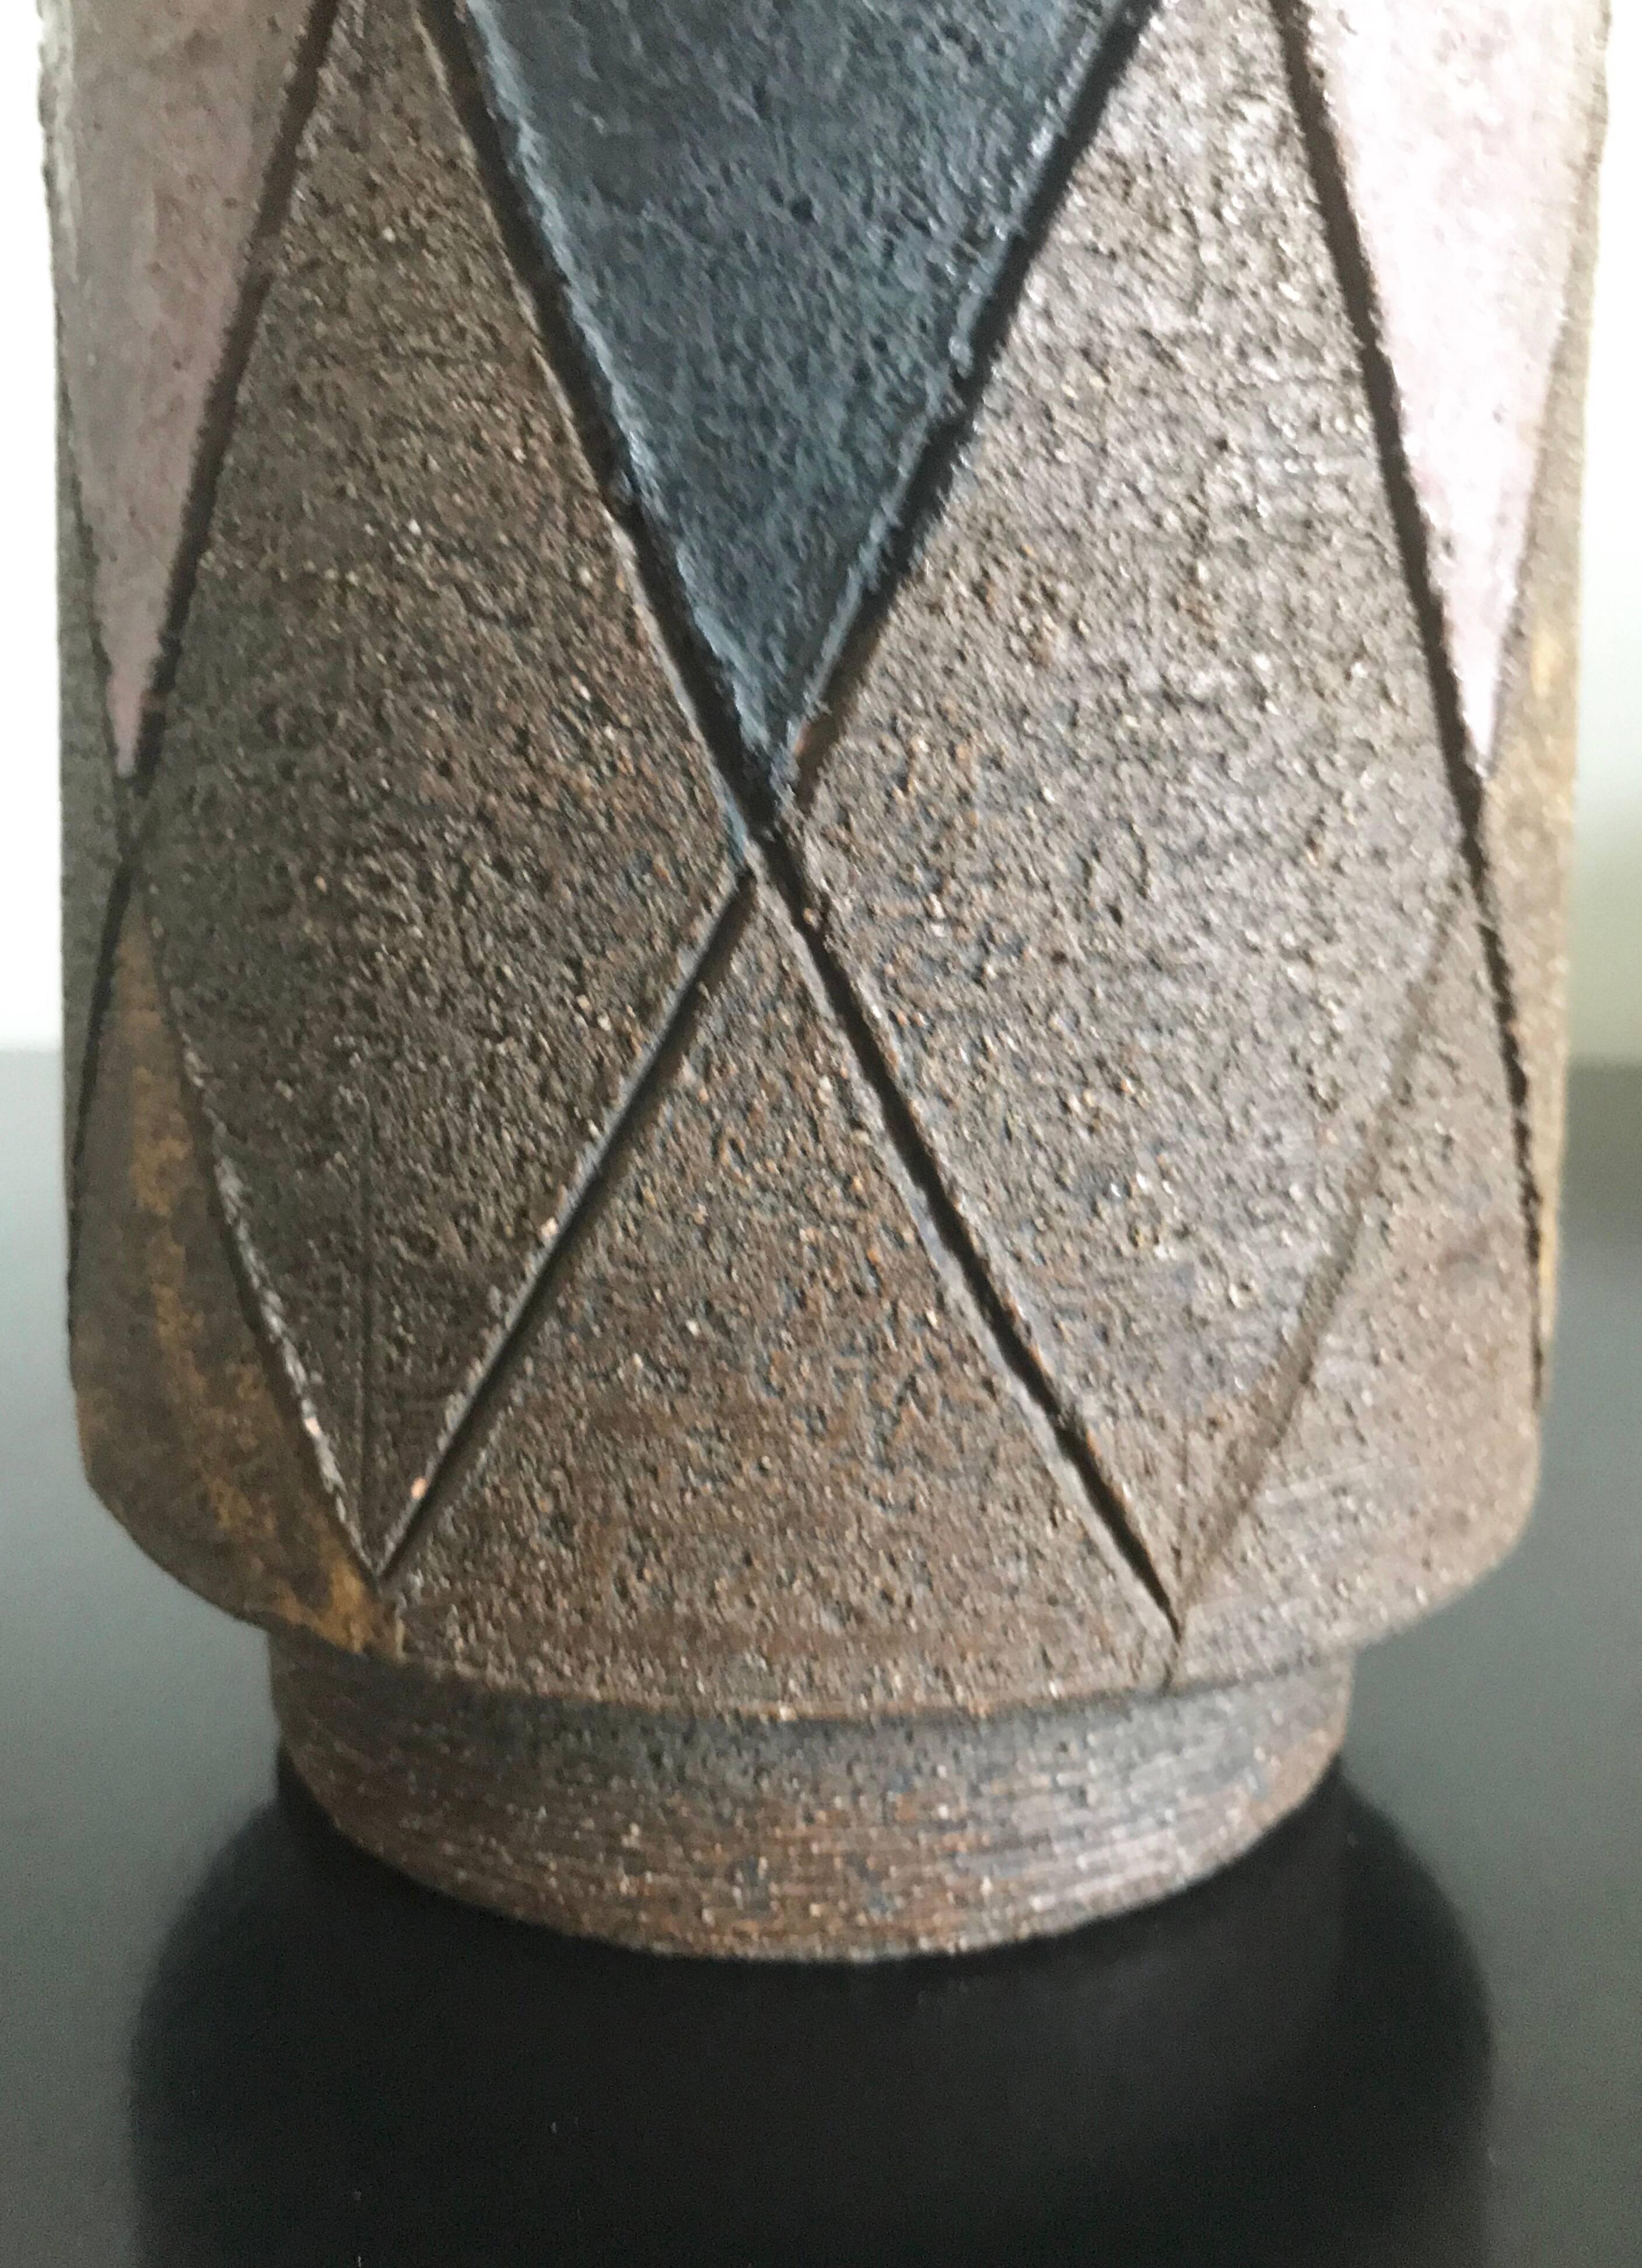 Italian Bitossi Aldo Londi for Raymor Harlequin Art Pottery Vase